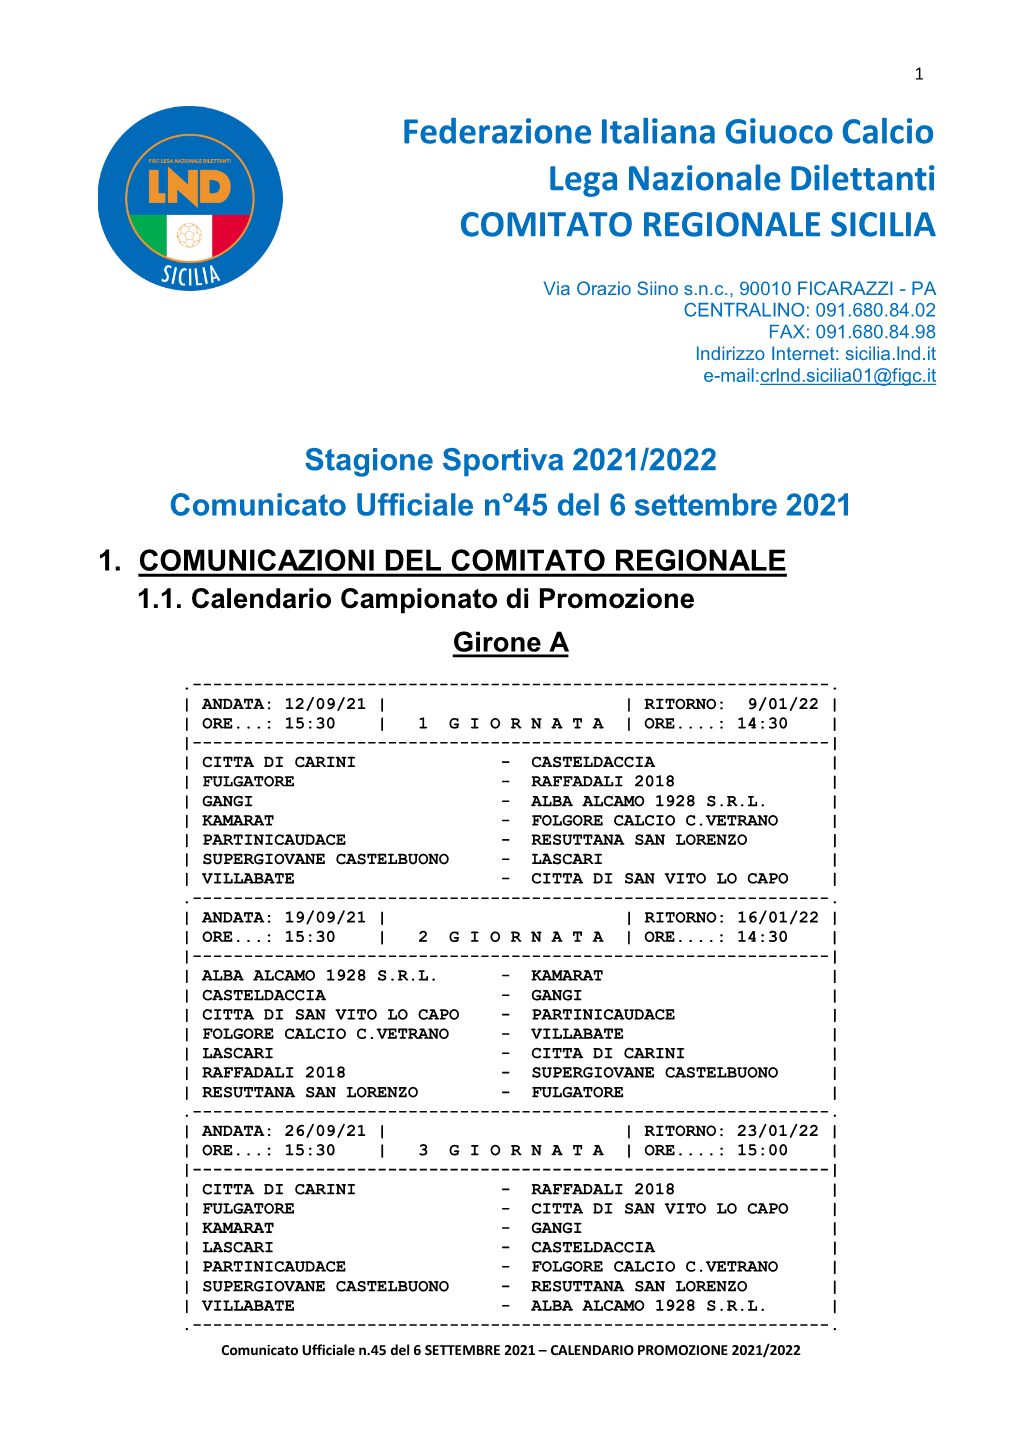 Federazione Italiana Giuoco Calcio Lega Nazionale Dilettanti COMITATO REGIONALE SICILIA